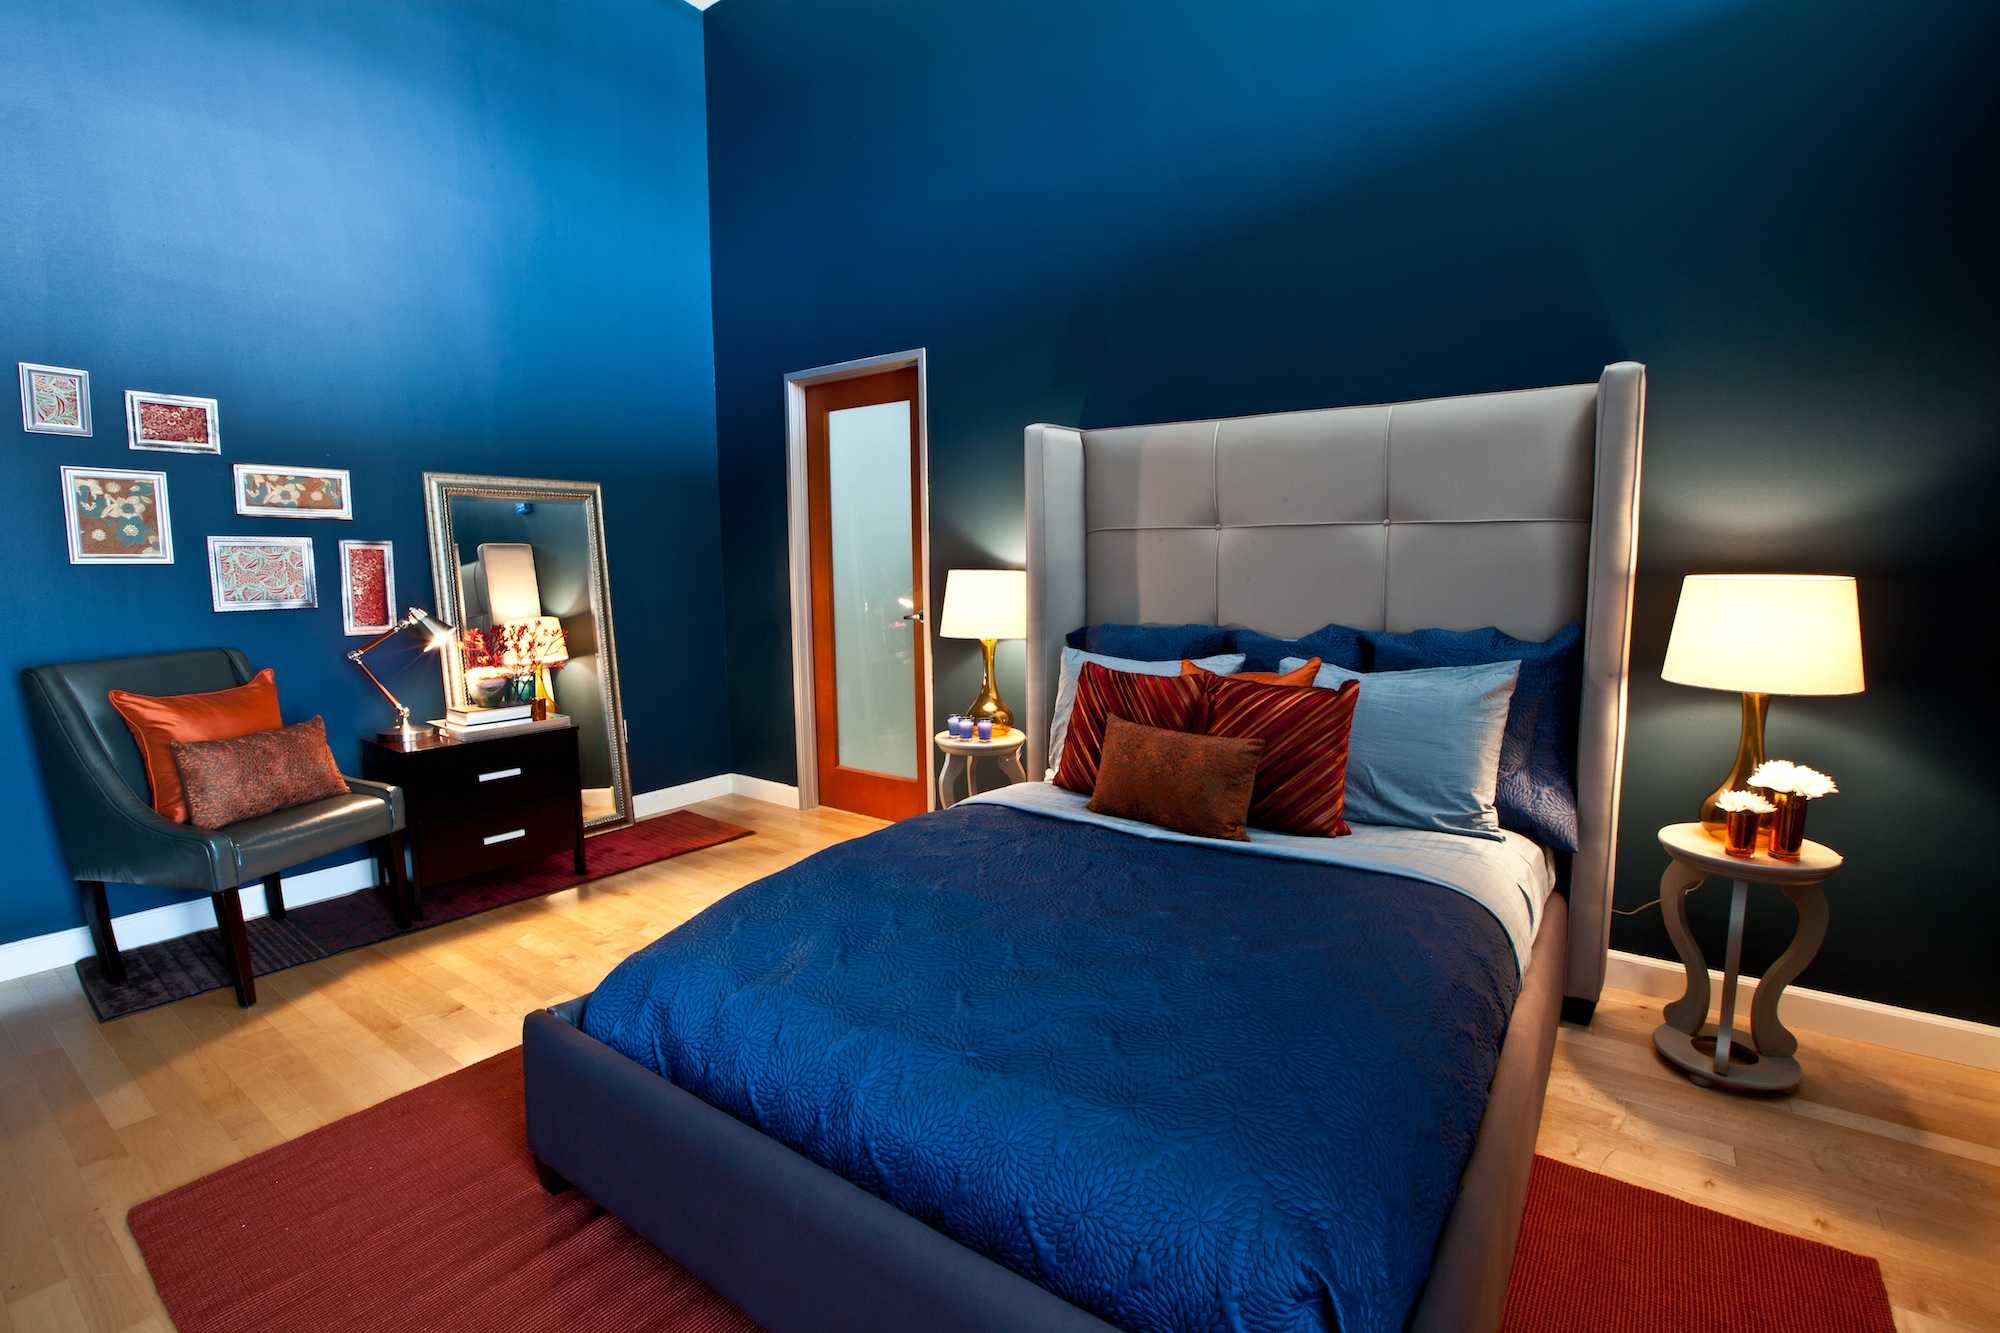 Синяя мебель: оптимальные сочетания и влияние цвета (110 фото)